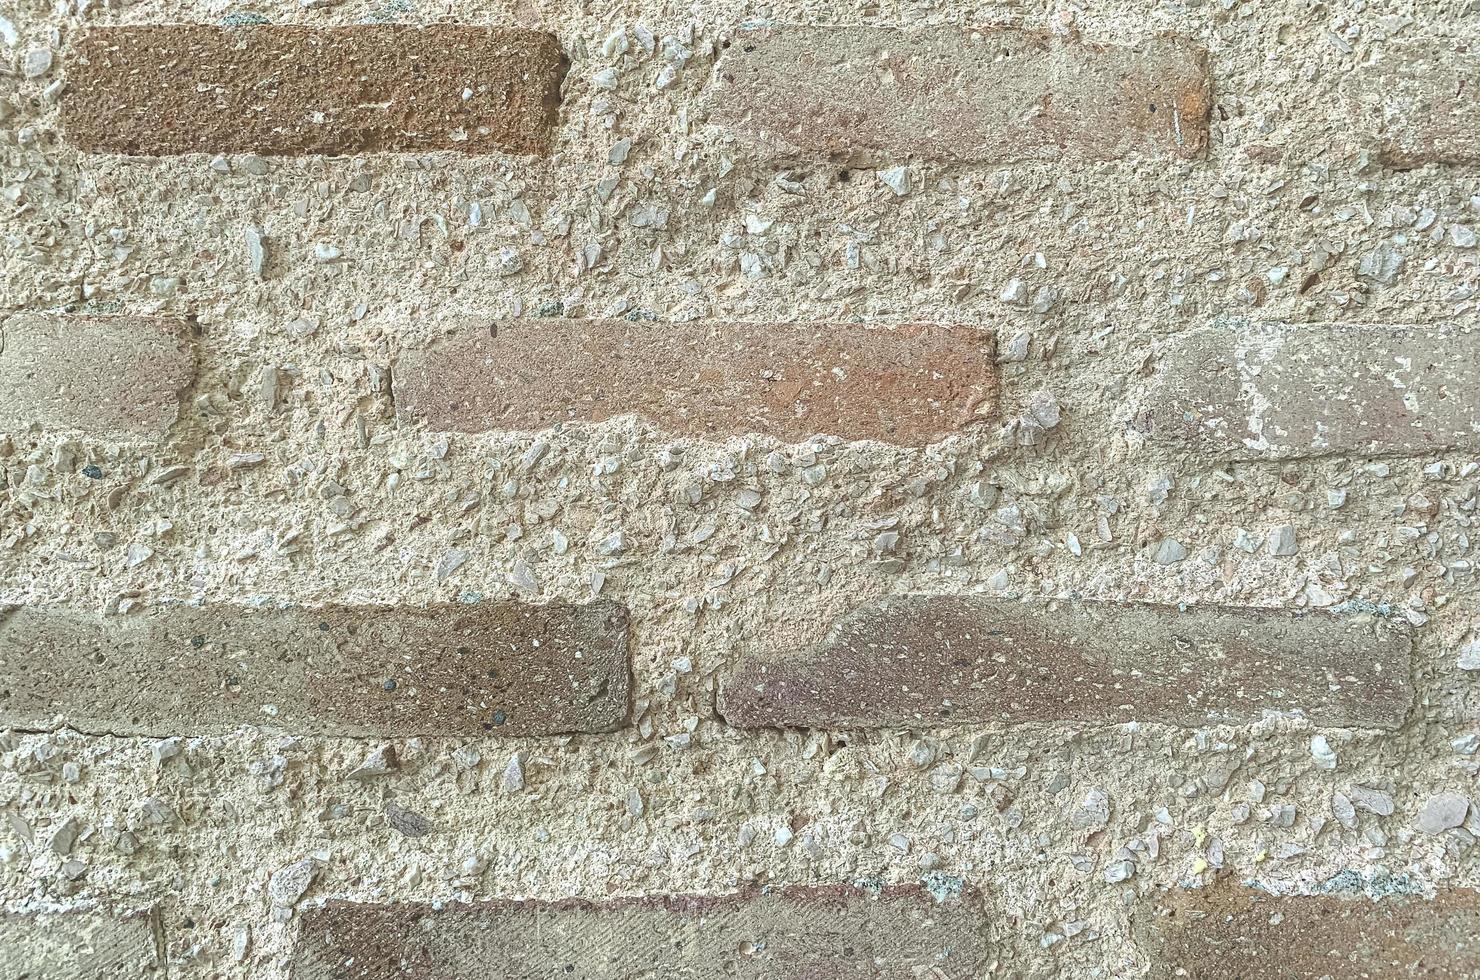 fundo, textura de pedra da parede velha, grunge. foto de estúdio